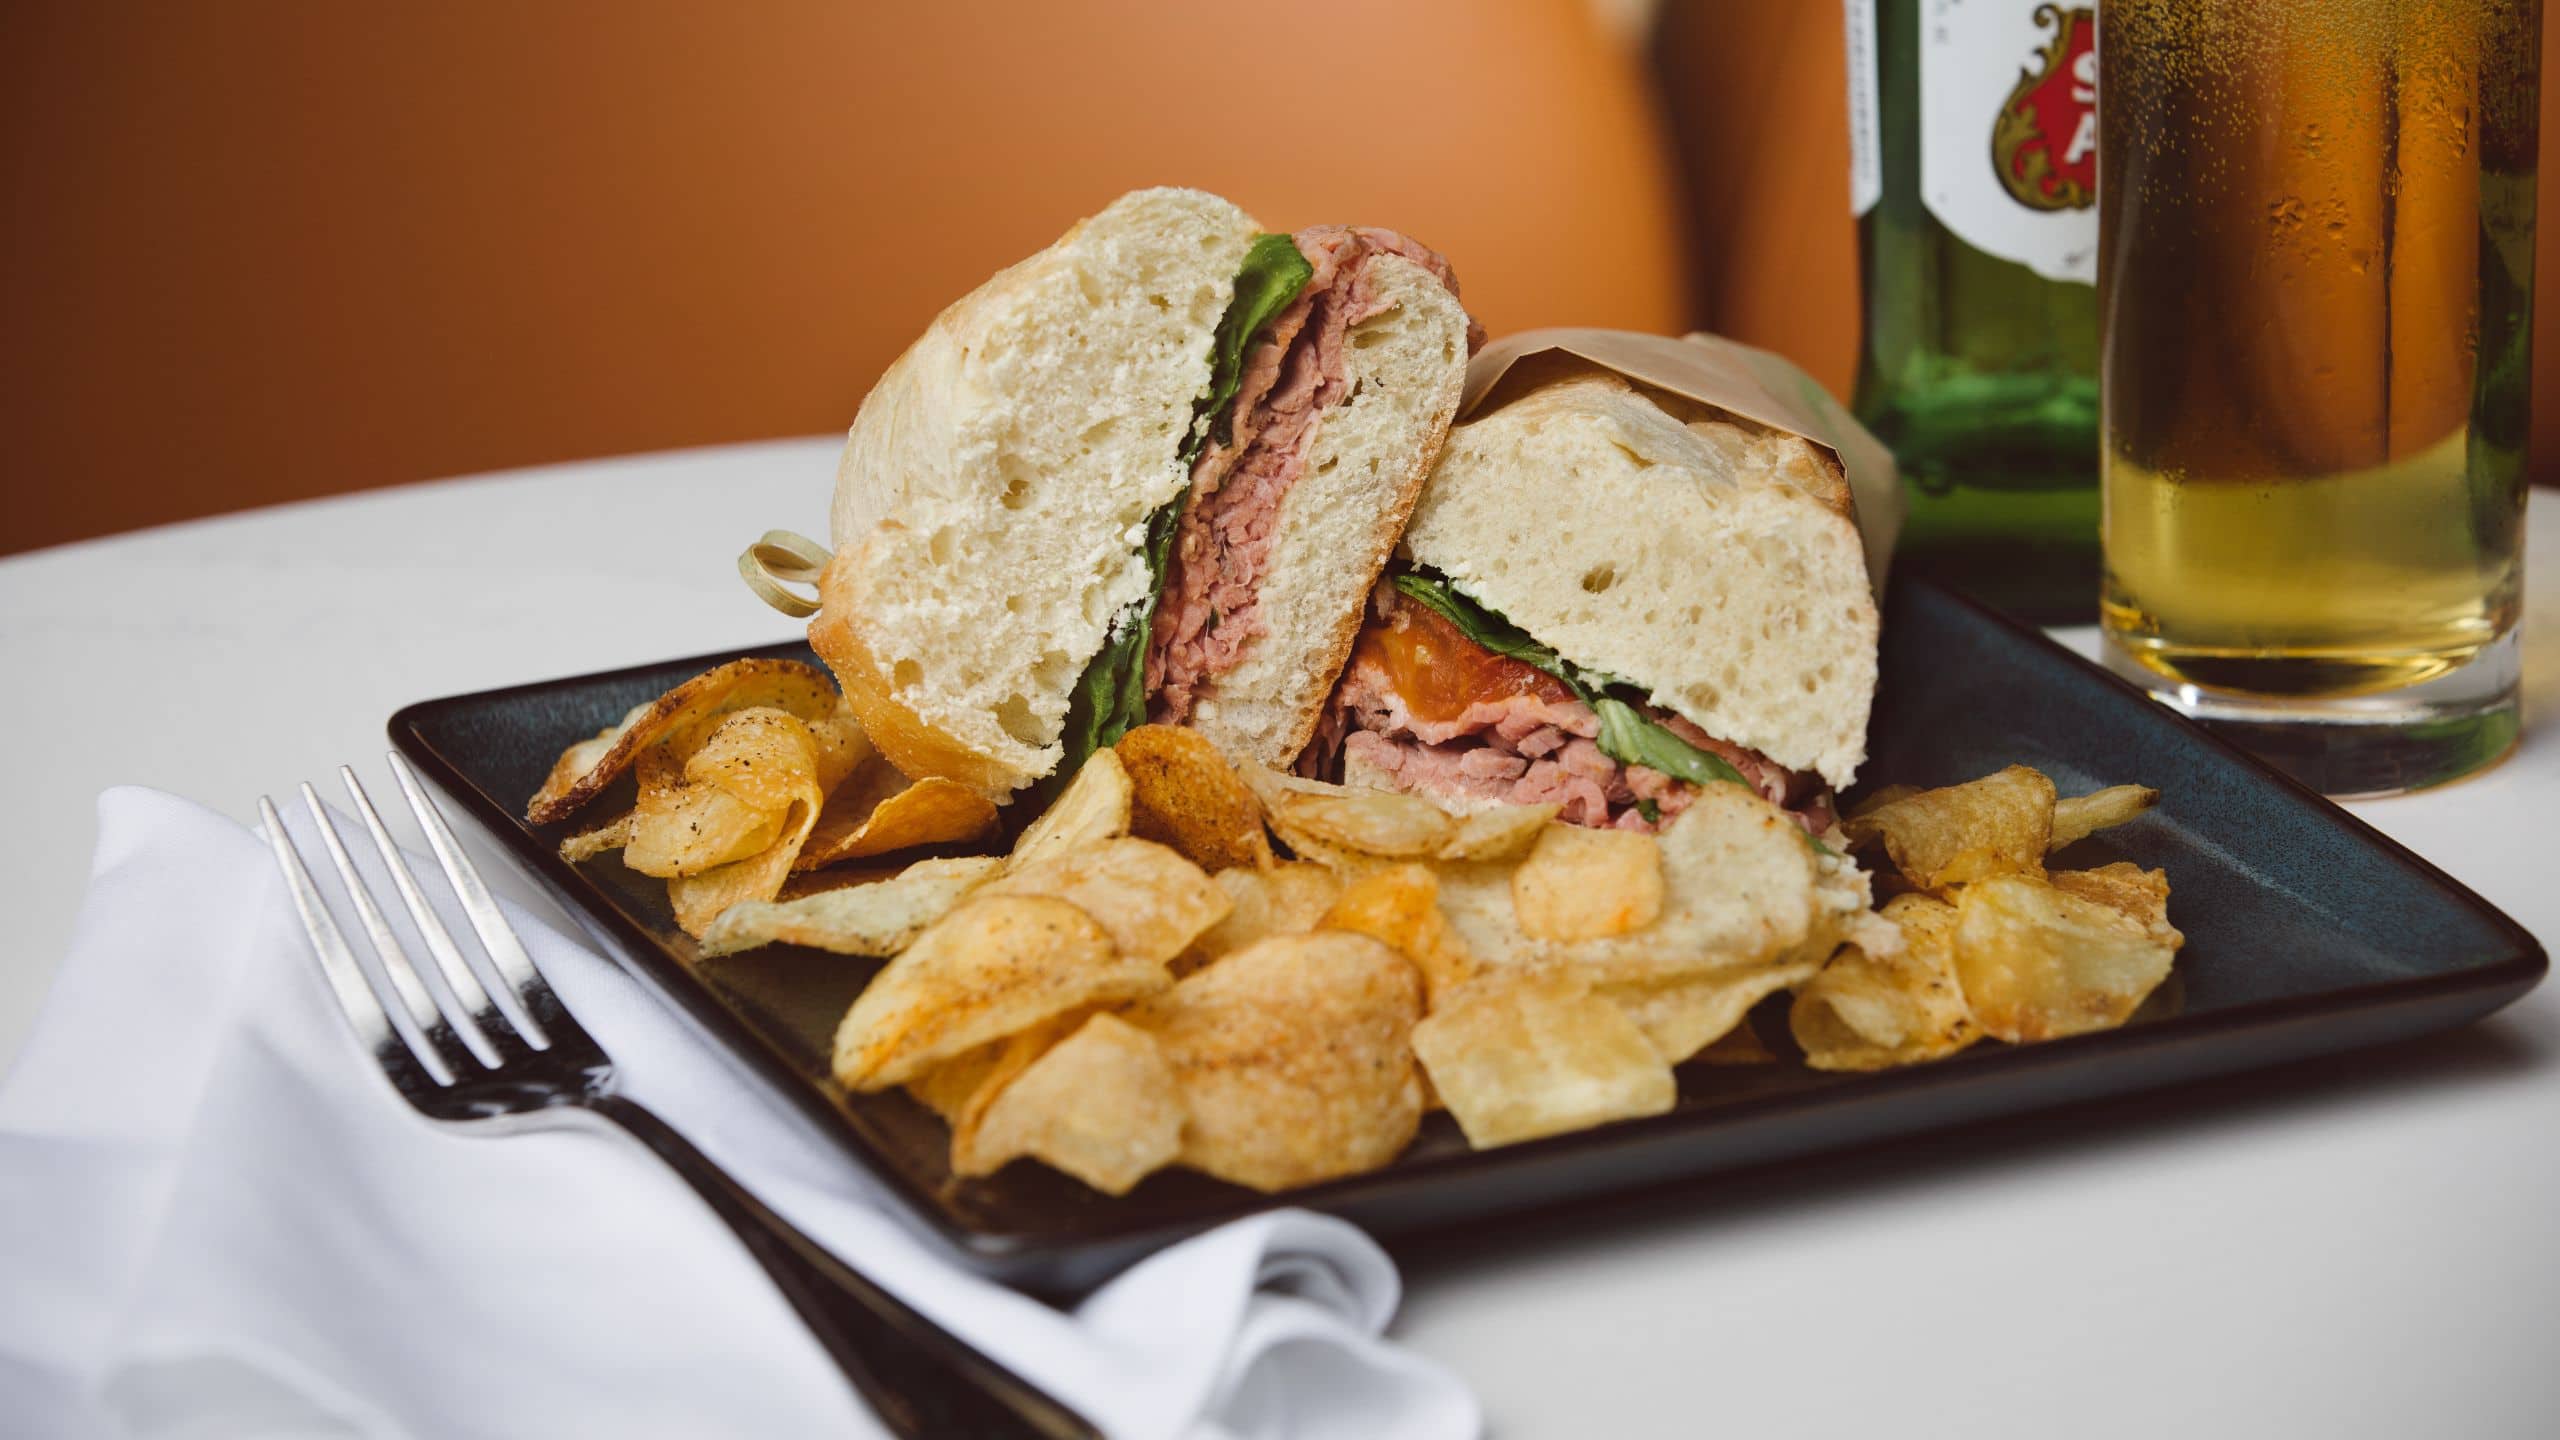 Hyatt Regency Boston / Cambridge Sandwich With Chips